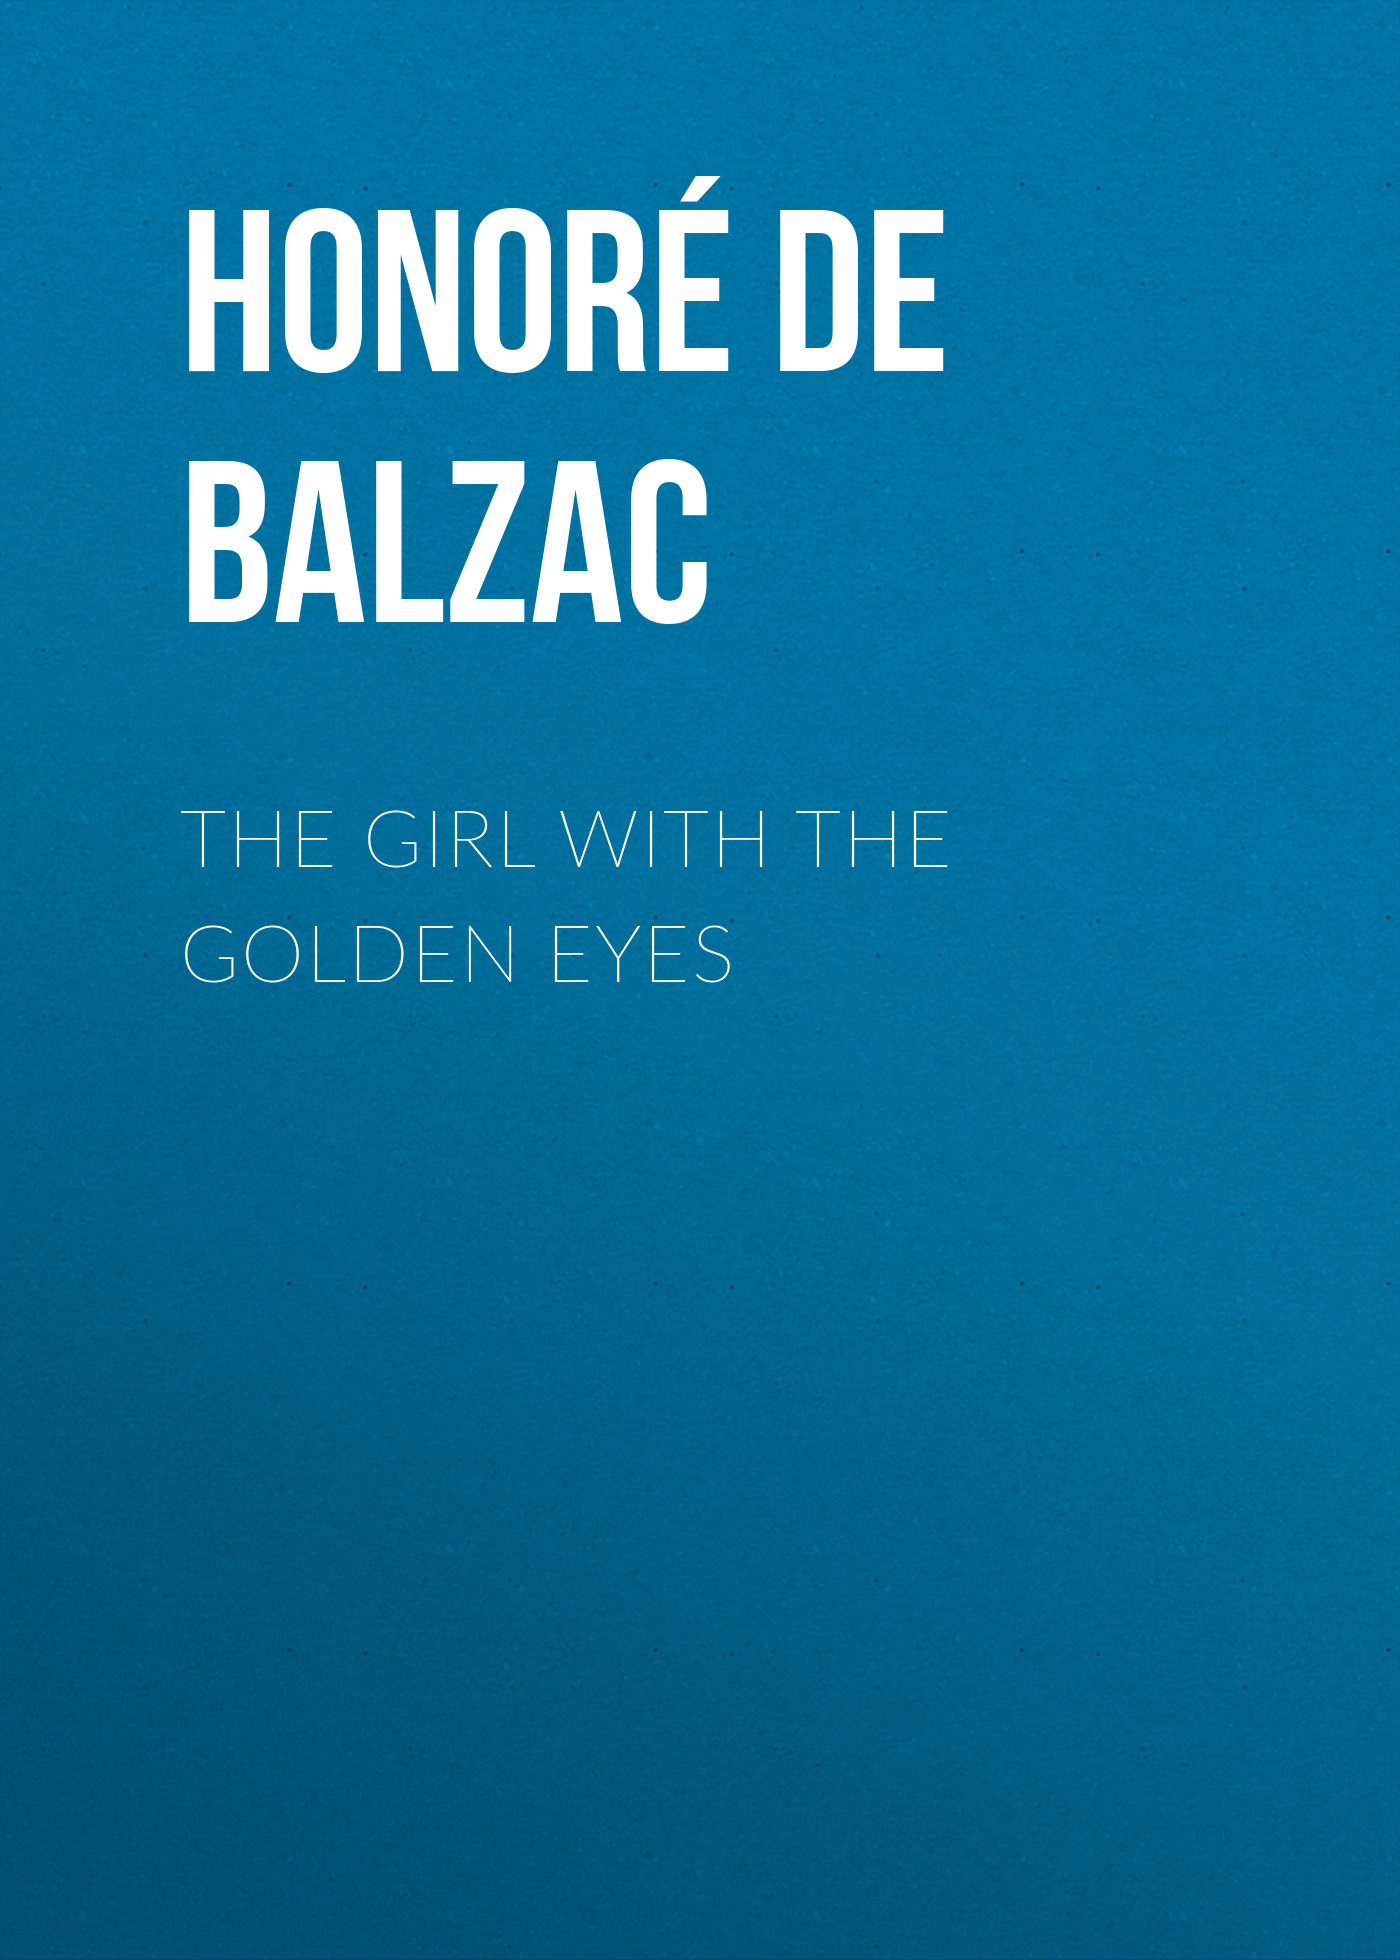 Книга The Girl with the Golden Eyes из серии , созданная Honoré Balzac, может относится к жанру Литература 19 века, Зарубежная старинная литература, Зарубежная классика. Стоимость электронной книги The Girl with the Golden Eyes с идентификатором 25019171 составляет 0 руб.